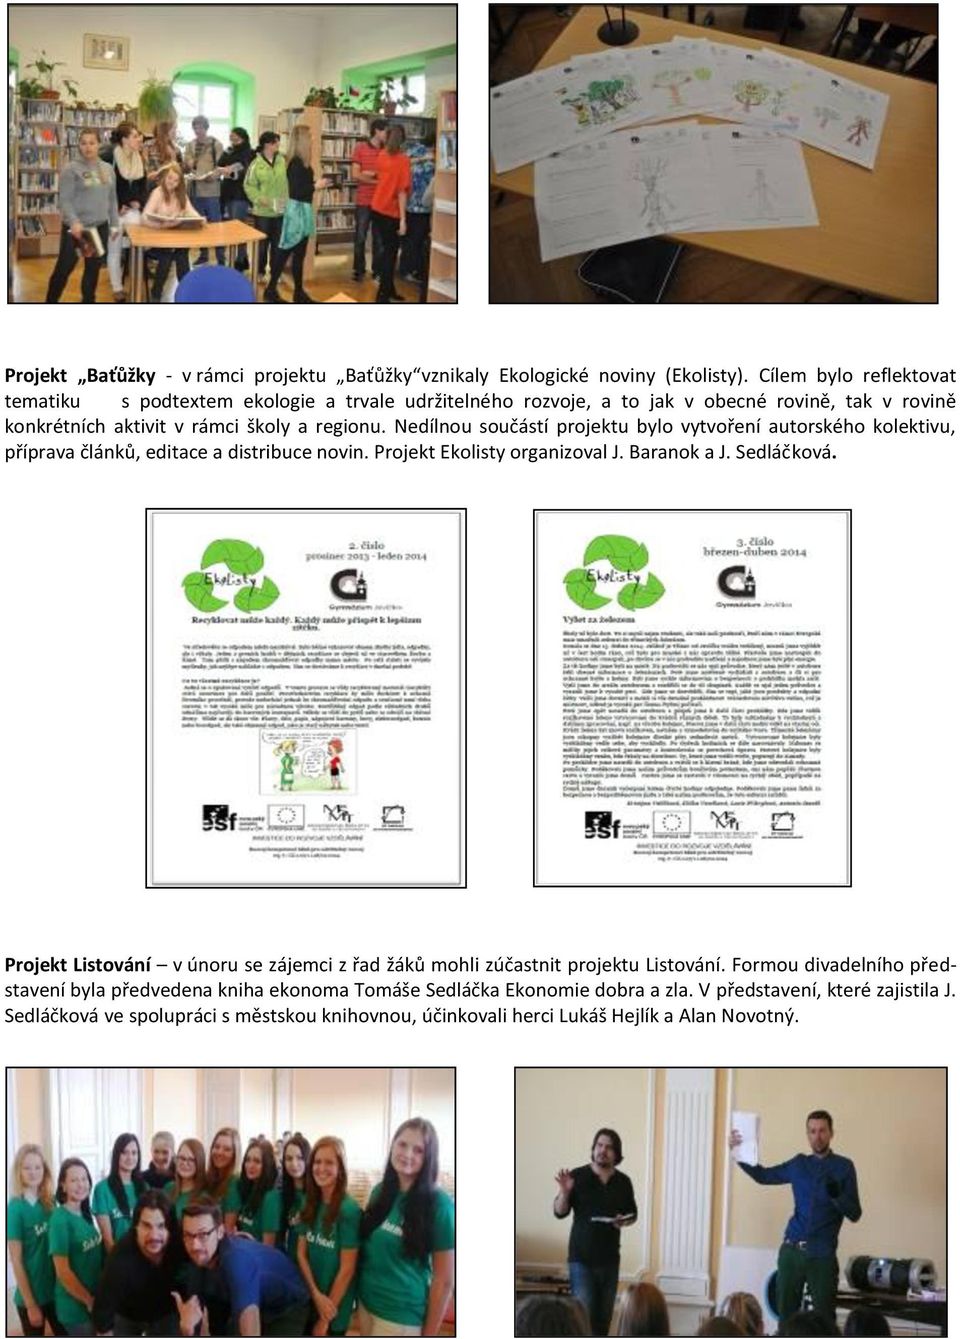 Nedílnou součástí projektu bylo vytvoření autorského kolektivu, příprava článků, editace a distribuce novin. Projekt Ekolisty organizoval J. Baranok a J. Sedláčková.